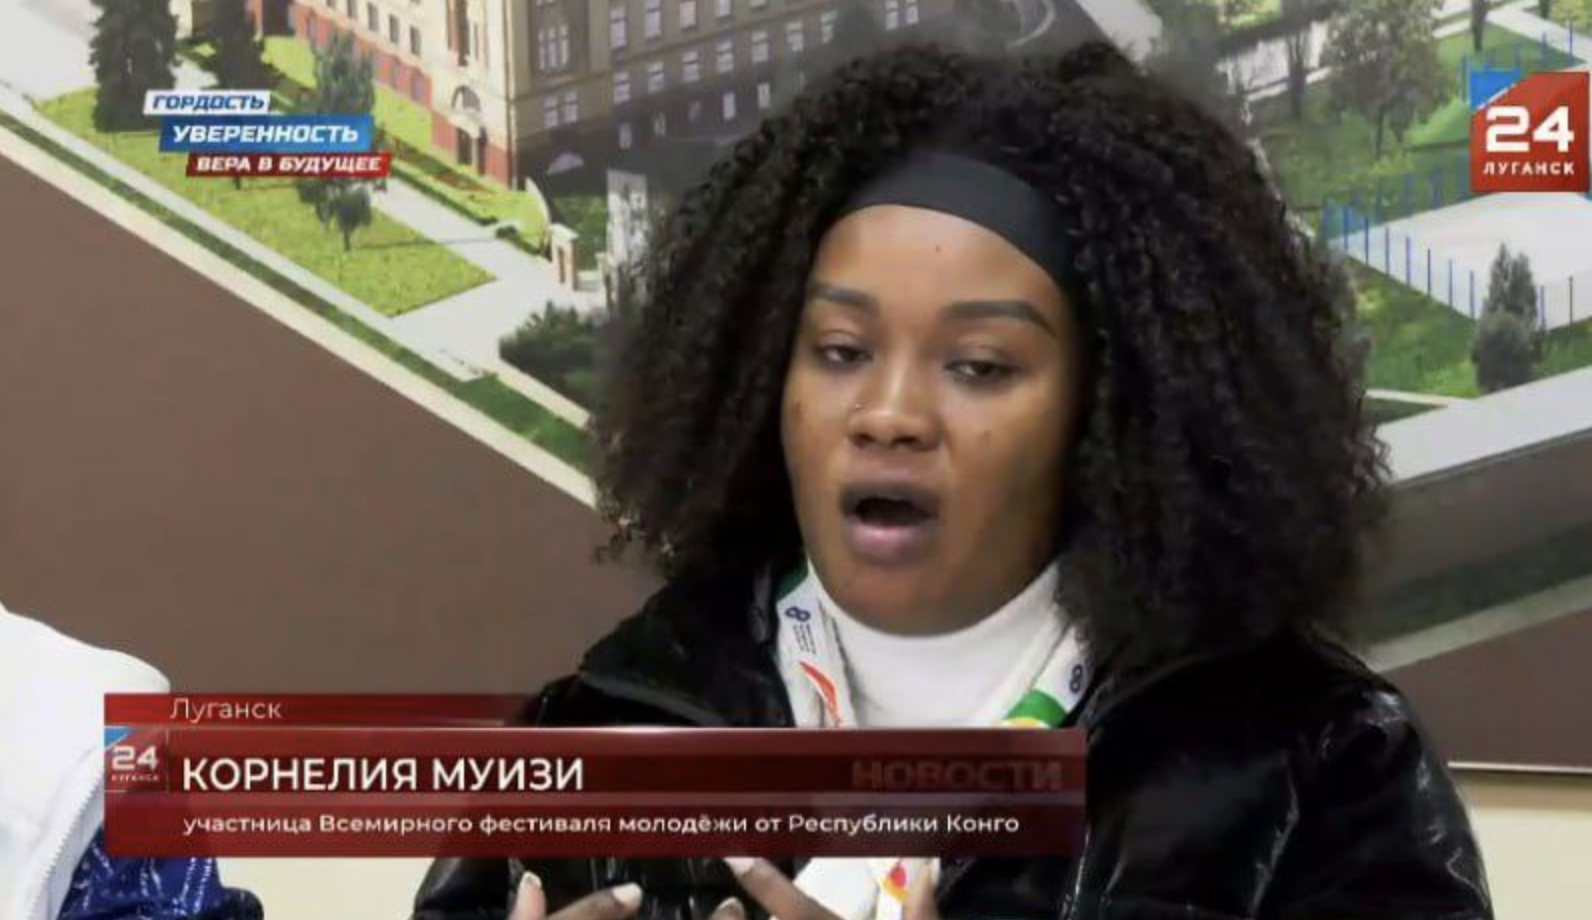 Пропагандистские контрасты: как РФ использовала "всемирный фестиваль молодежи" для пропаганды выборов Путина на оккупированной Луганщине